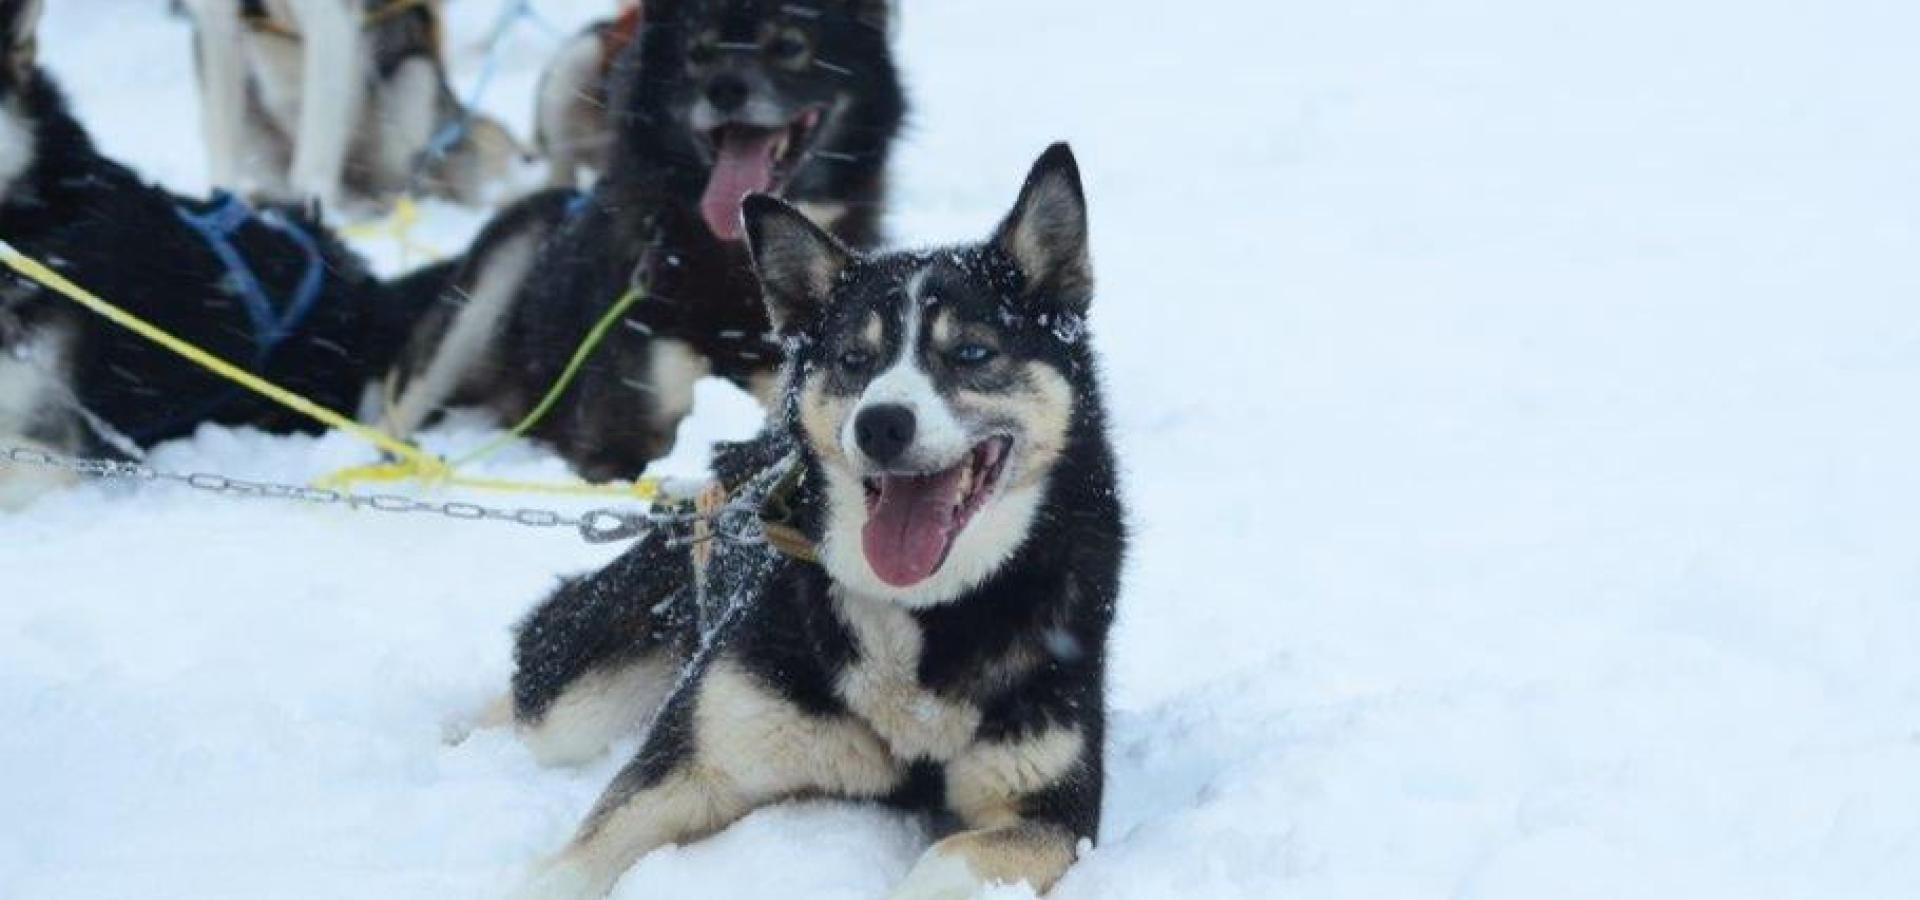 Hundekjøring i arktisk natur med lunsj først - Activenorth